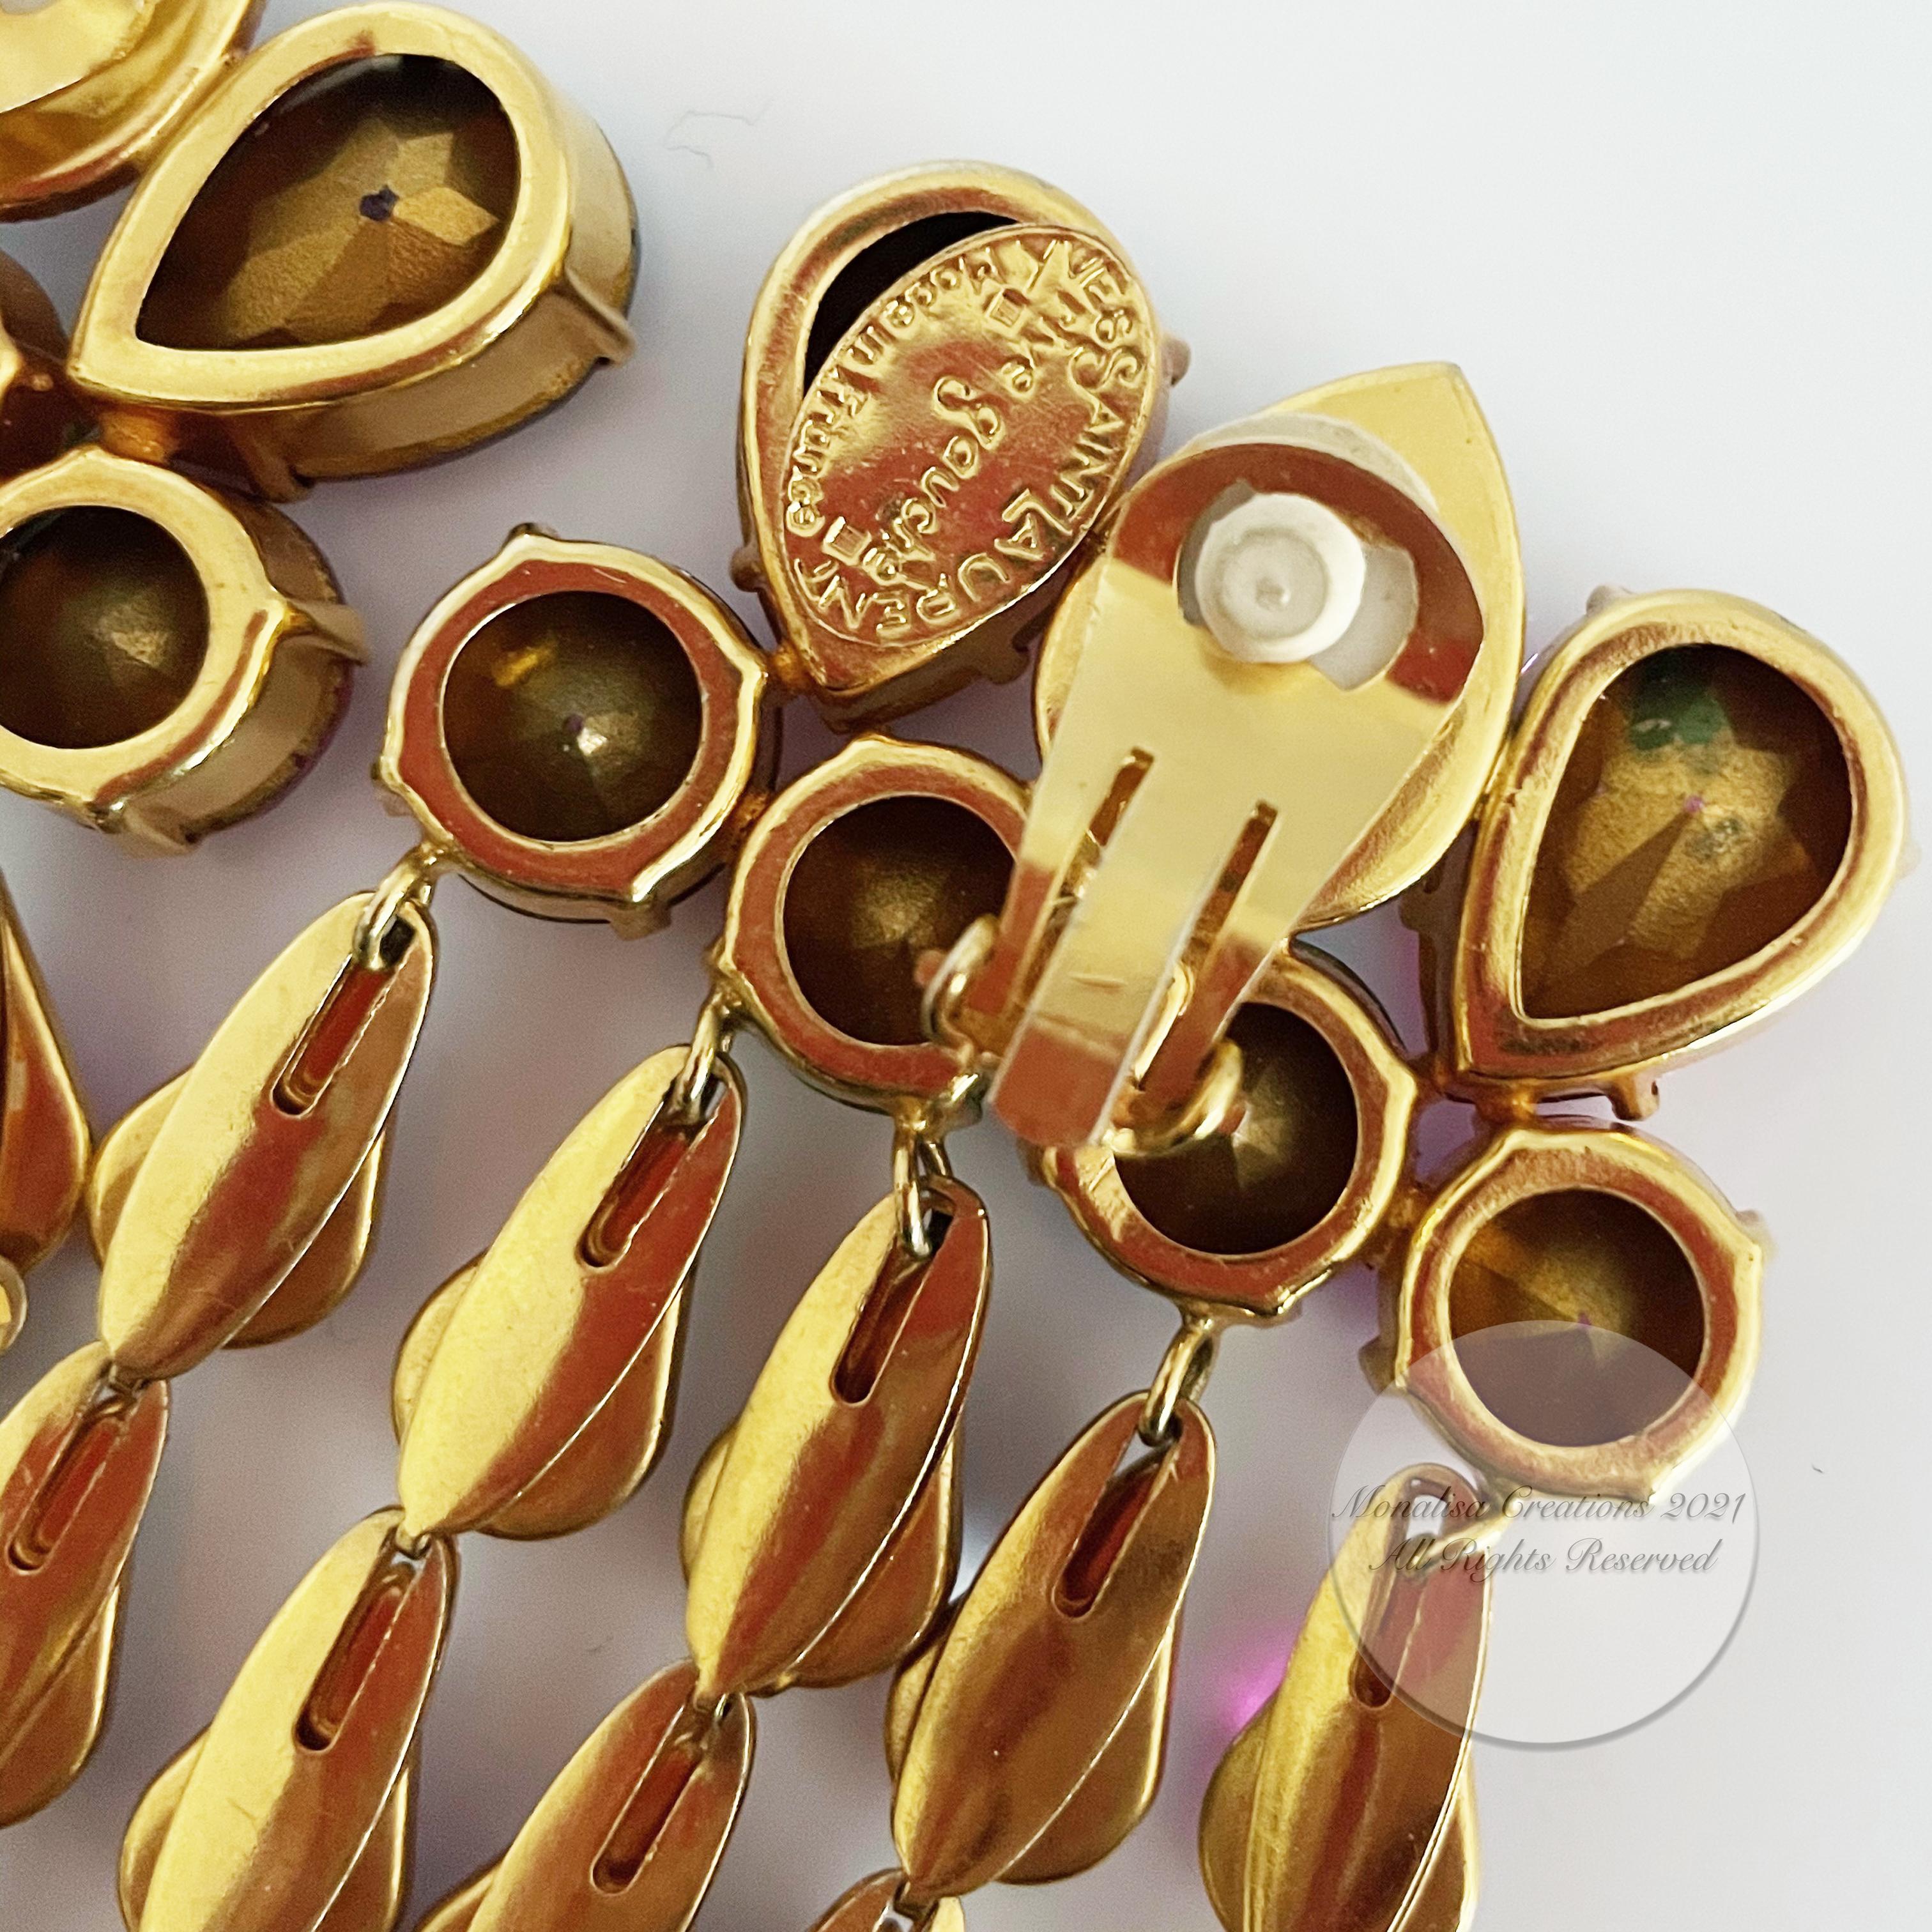 Yves Saint Laurent Statement Earrings Massive Chandelier Dangles Vintage Rare 13